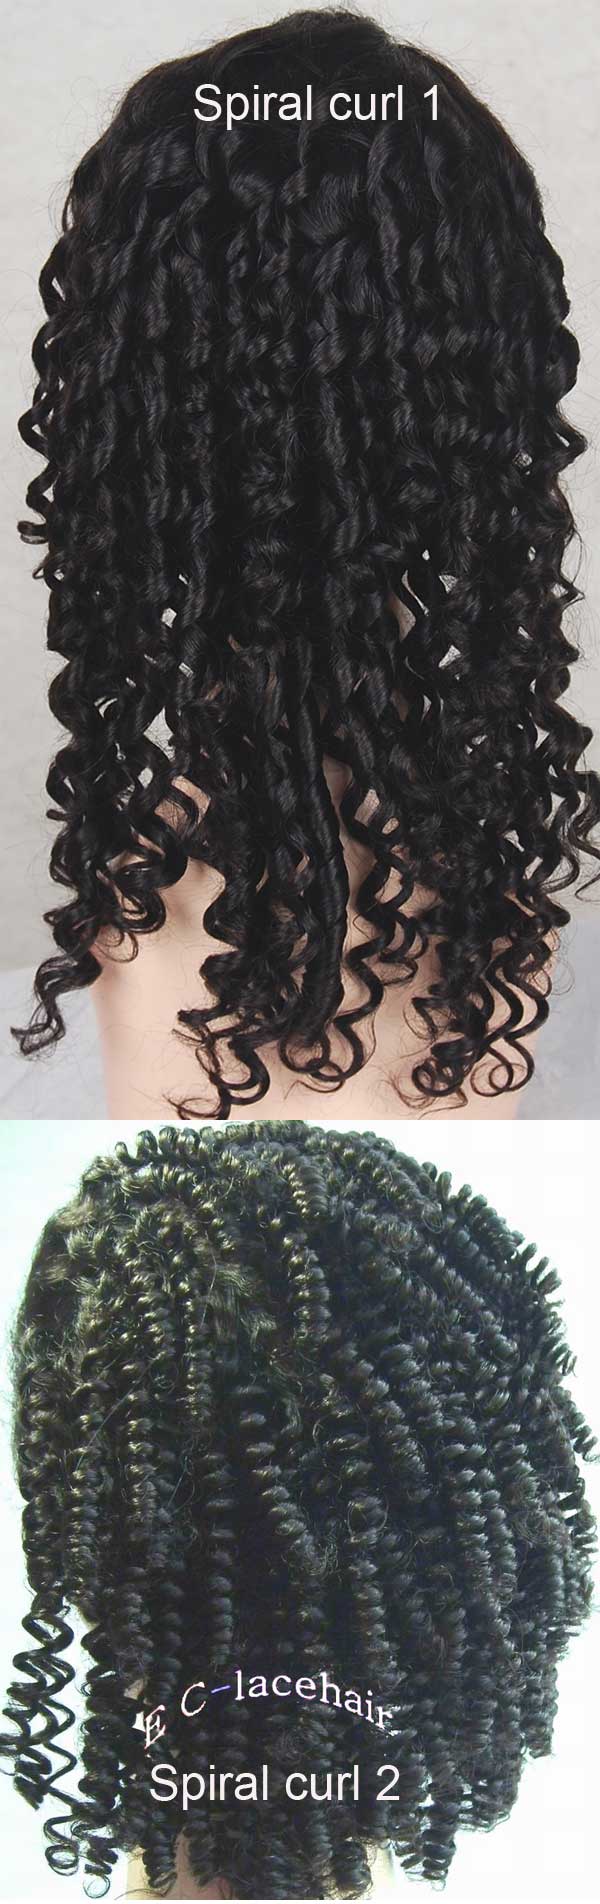 spiral curl wig